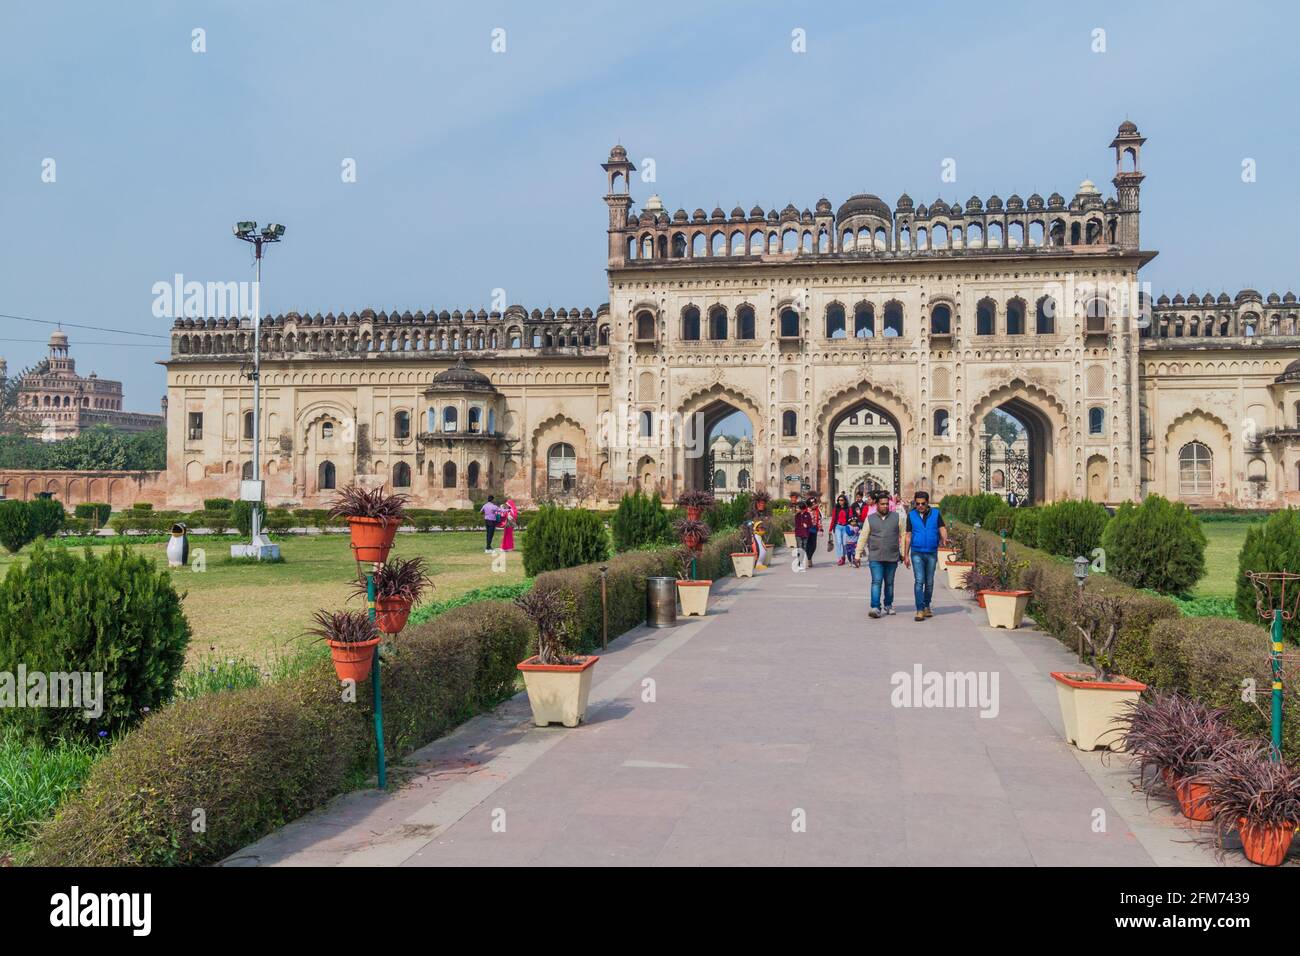 LUCKNOW, INDE - 3 FÉVRIER 2017 : porte d'entrée de Bara Imambara à Lucknow, État de l'Uttar Pradesh, Inde Banque D'Images